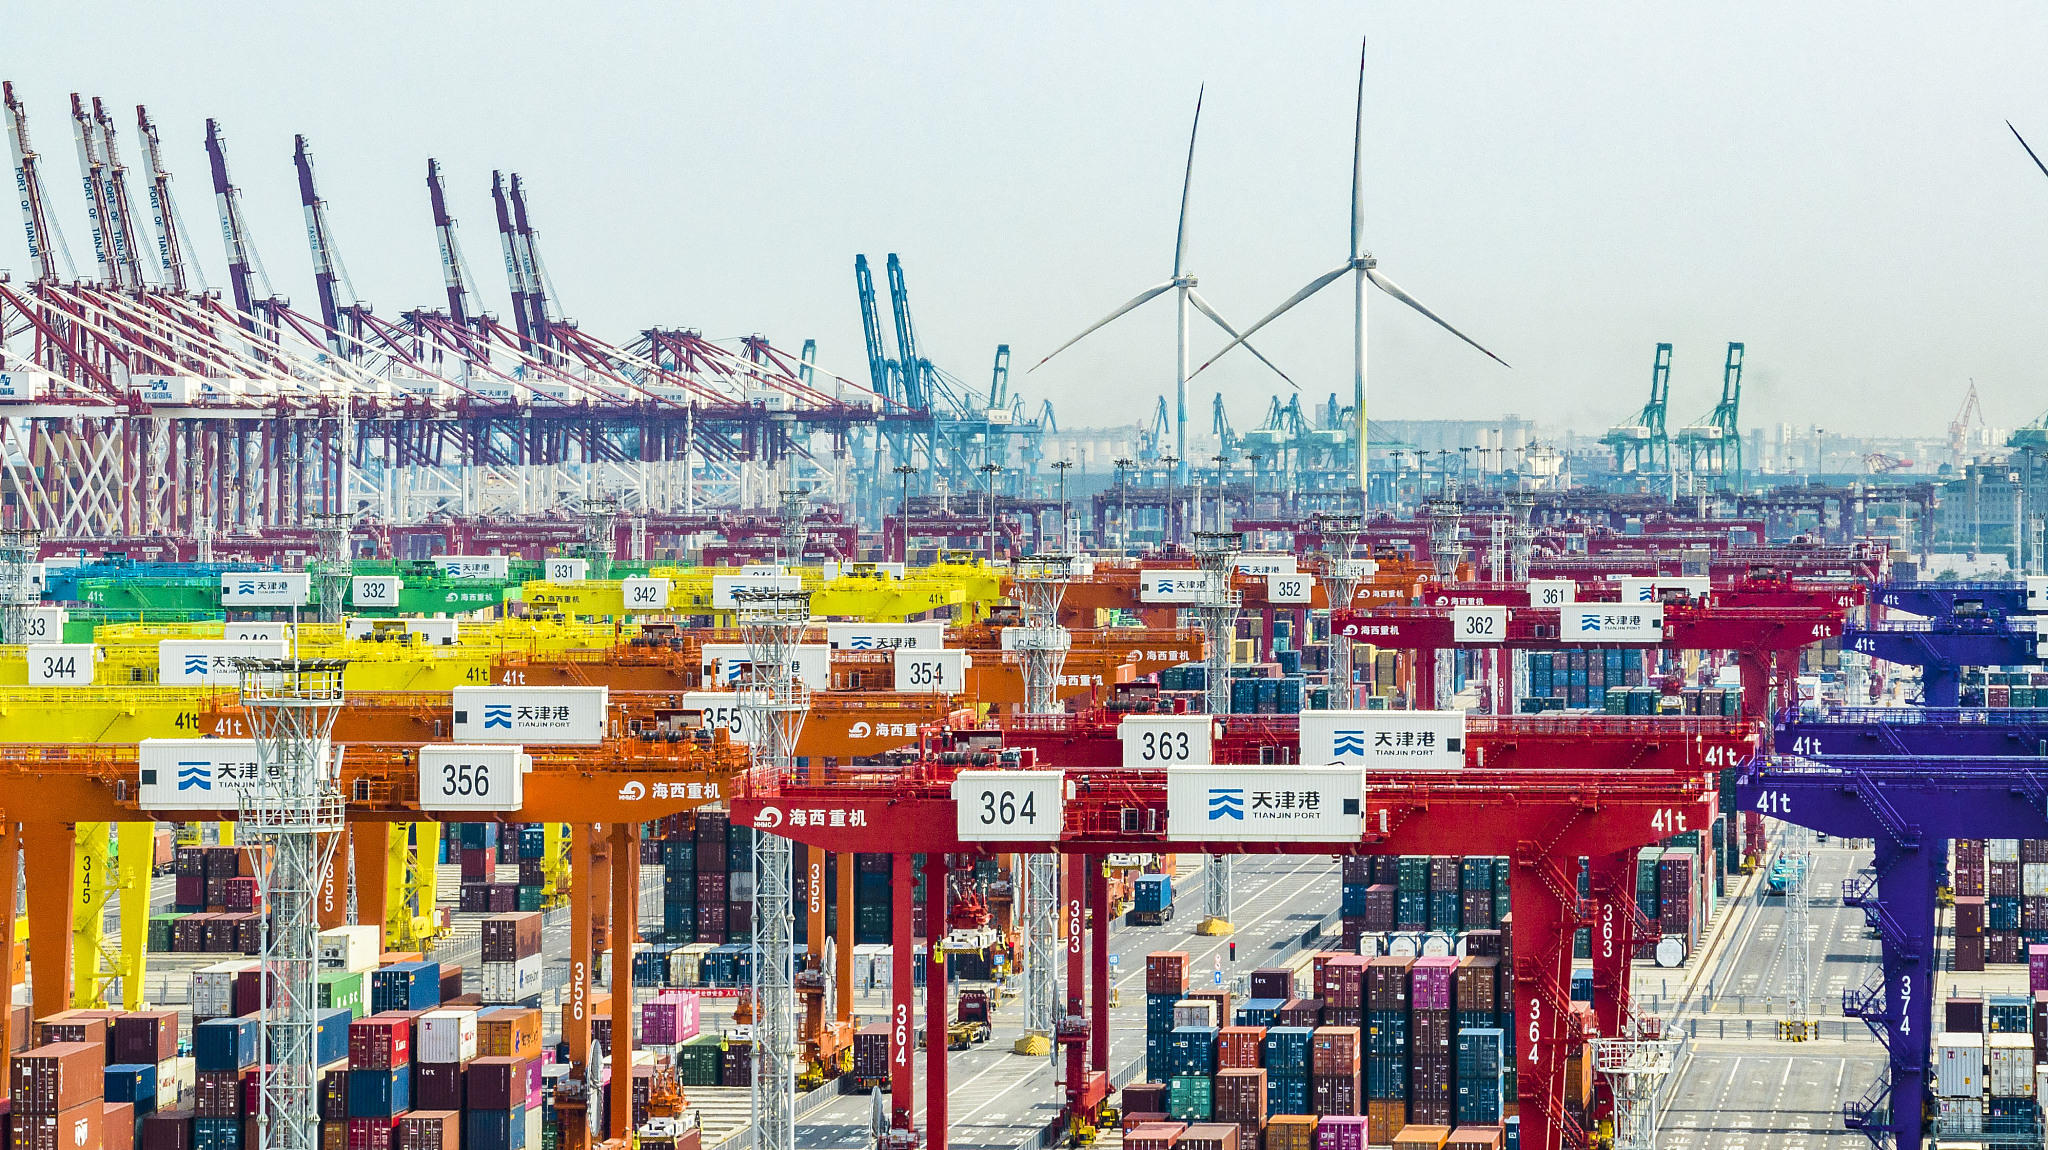 A view of Tianjin Port, Tianjin Municipality, north China, June 3, 2023. /CFP